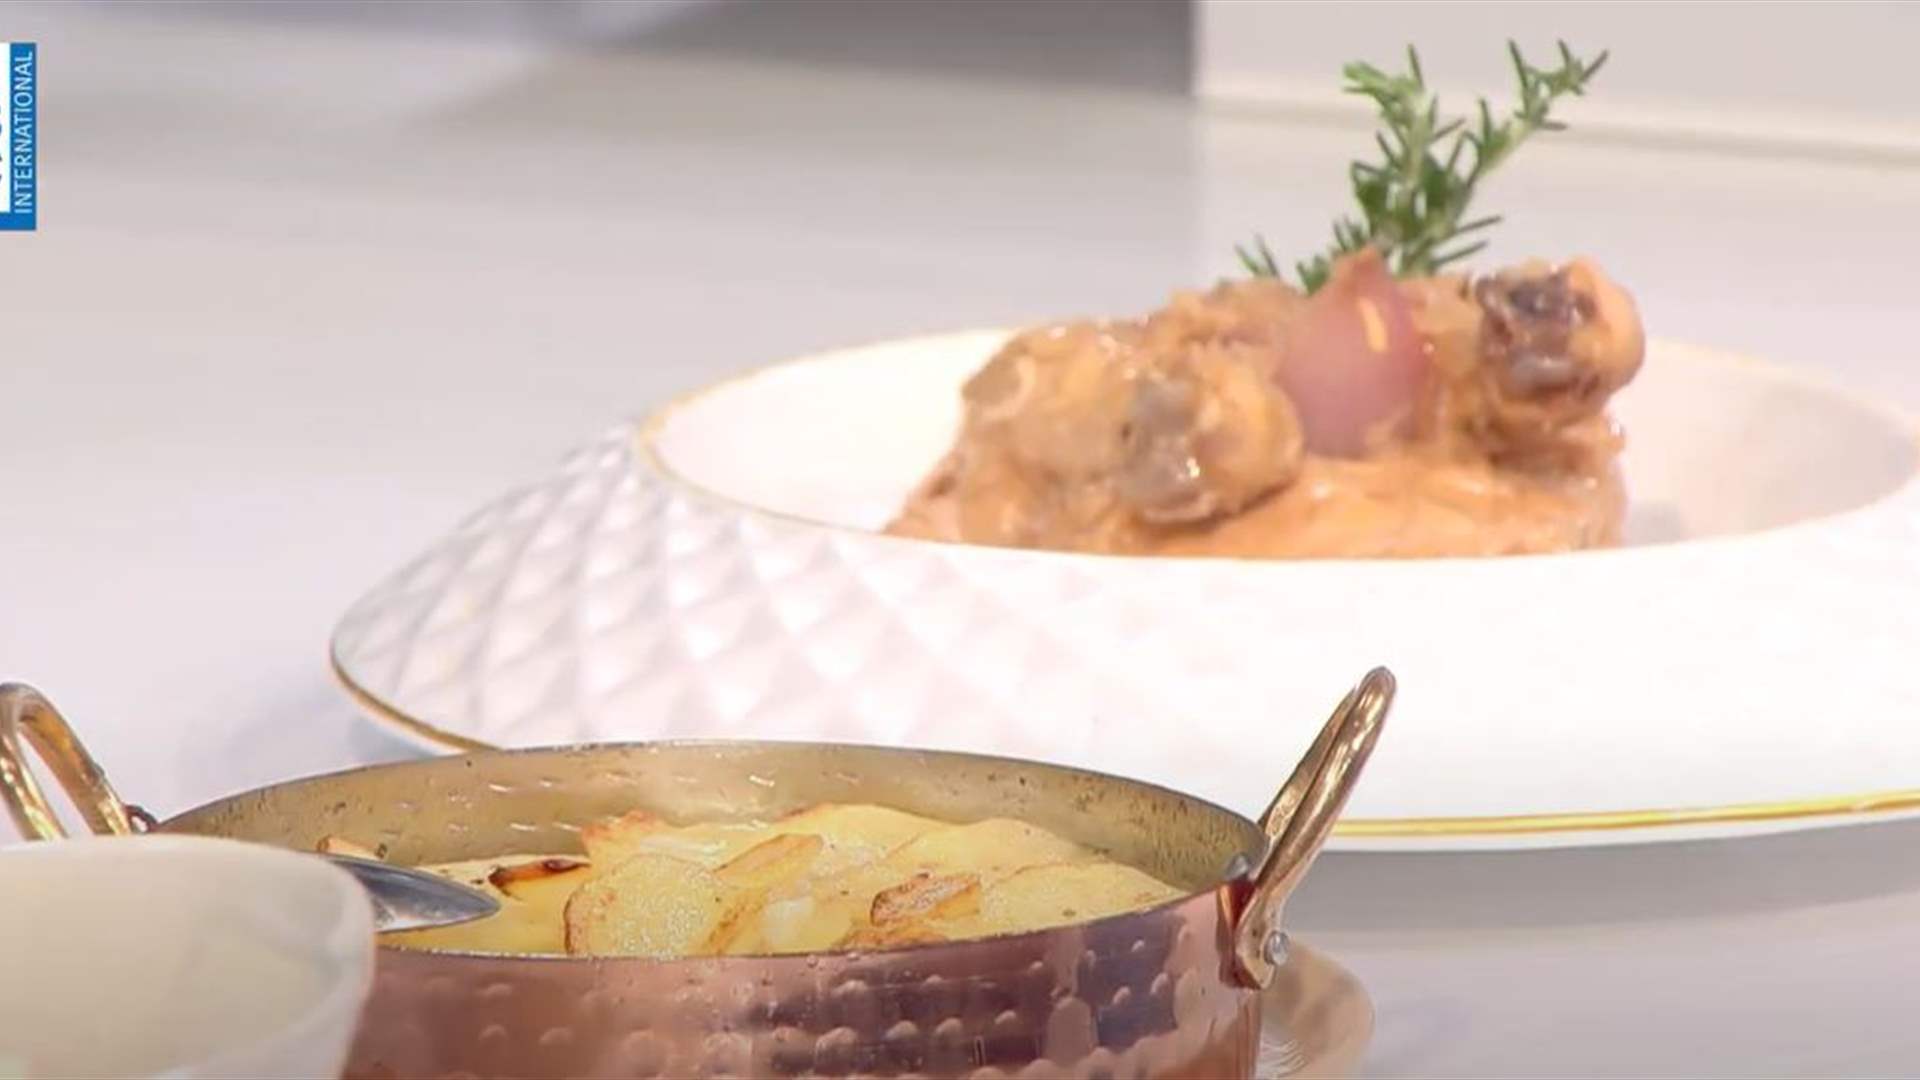 الدجاج مع الخل والبطاطا المشوية مع البصل... مائدة مميزة على طريقة الشيف حنا طويل (فيديو)